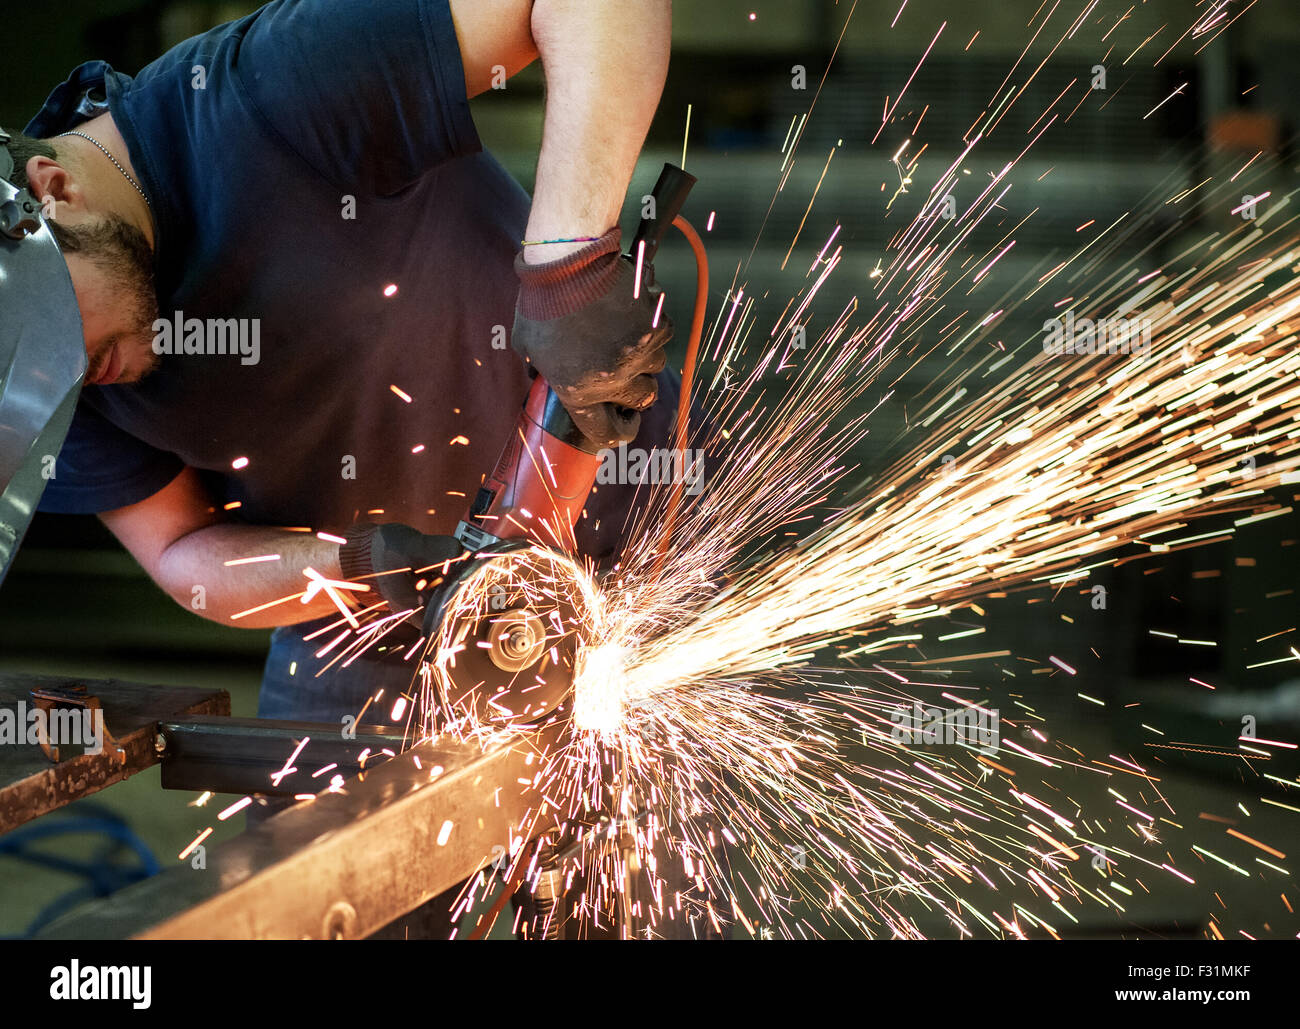 Coupe de métallurgistes une barre d'acier à l'aide d'une meule d'angle power tool Banque D'Images